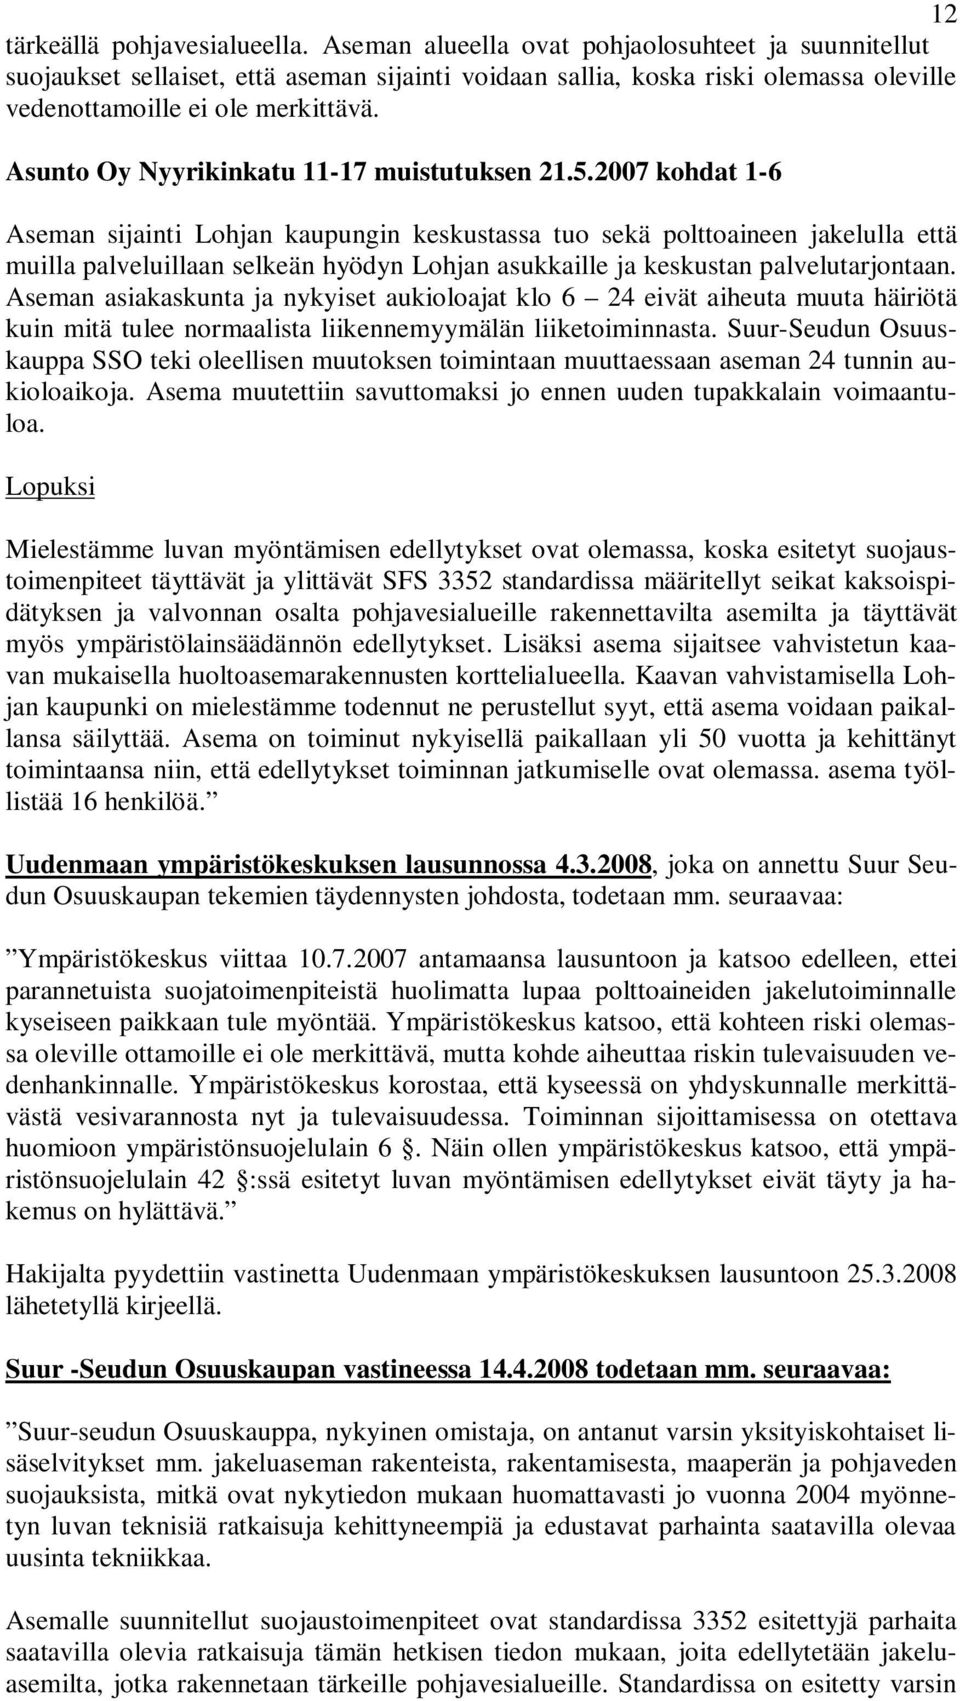 Asunto Oy Nyyrikinkatu 11-17 muistutuksen 21.5.